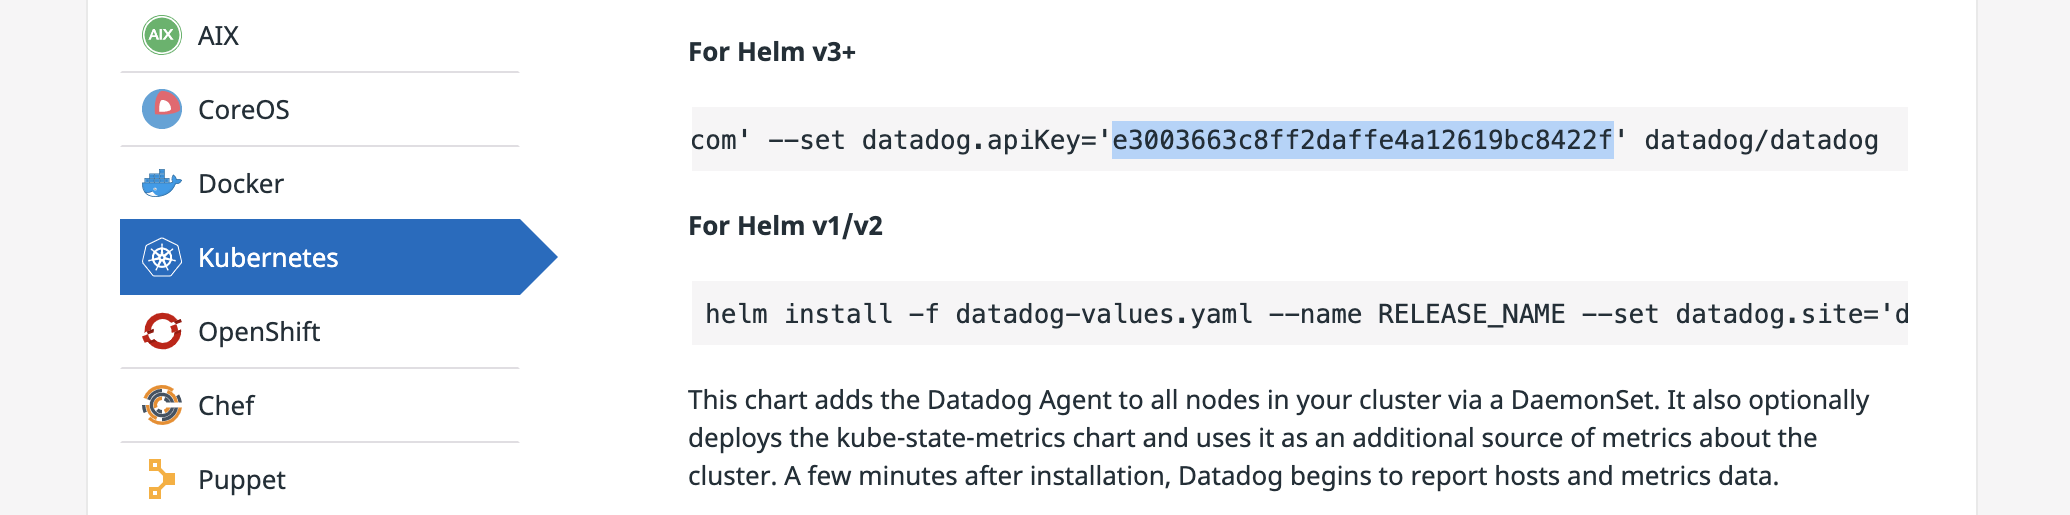 The Datadog API Key highlighted on the Kubernetes page